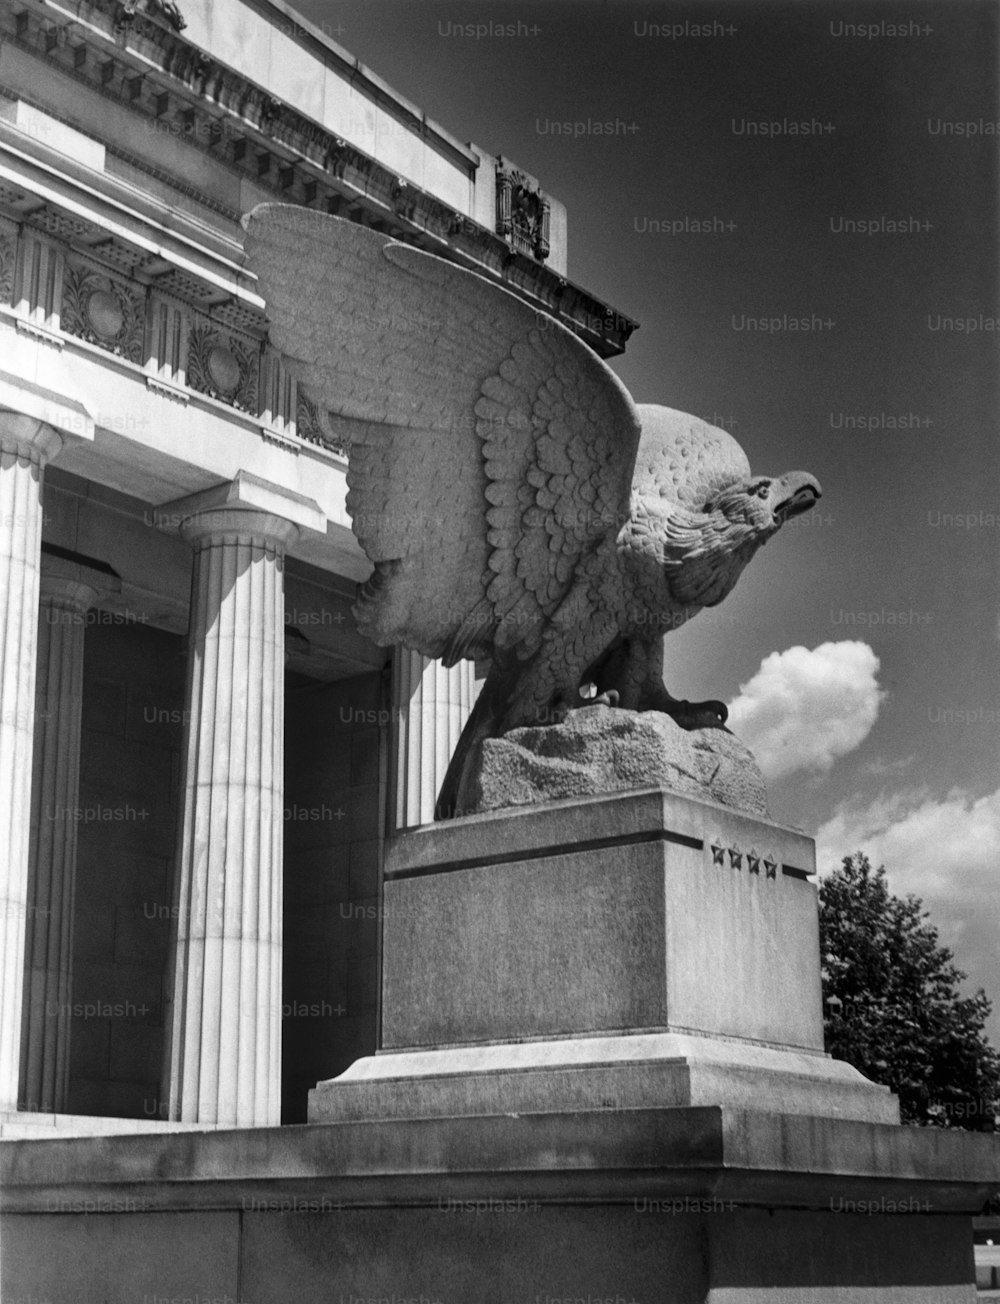 STATI UNITI - 1950 CIRCA: New York City, tomba di Grant.